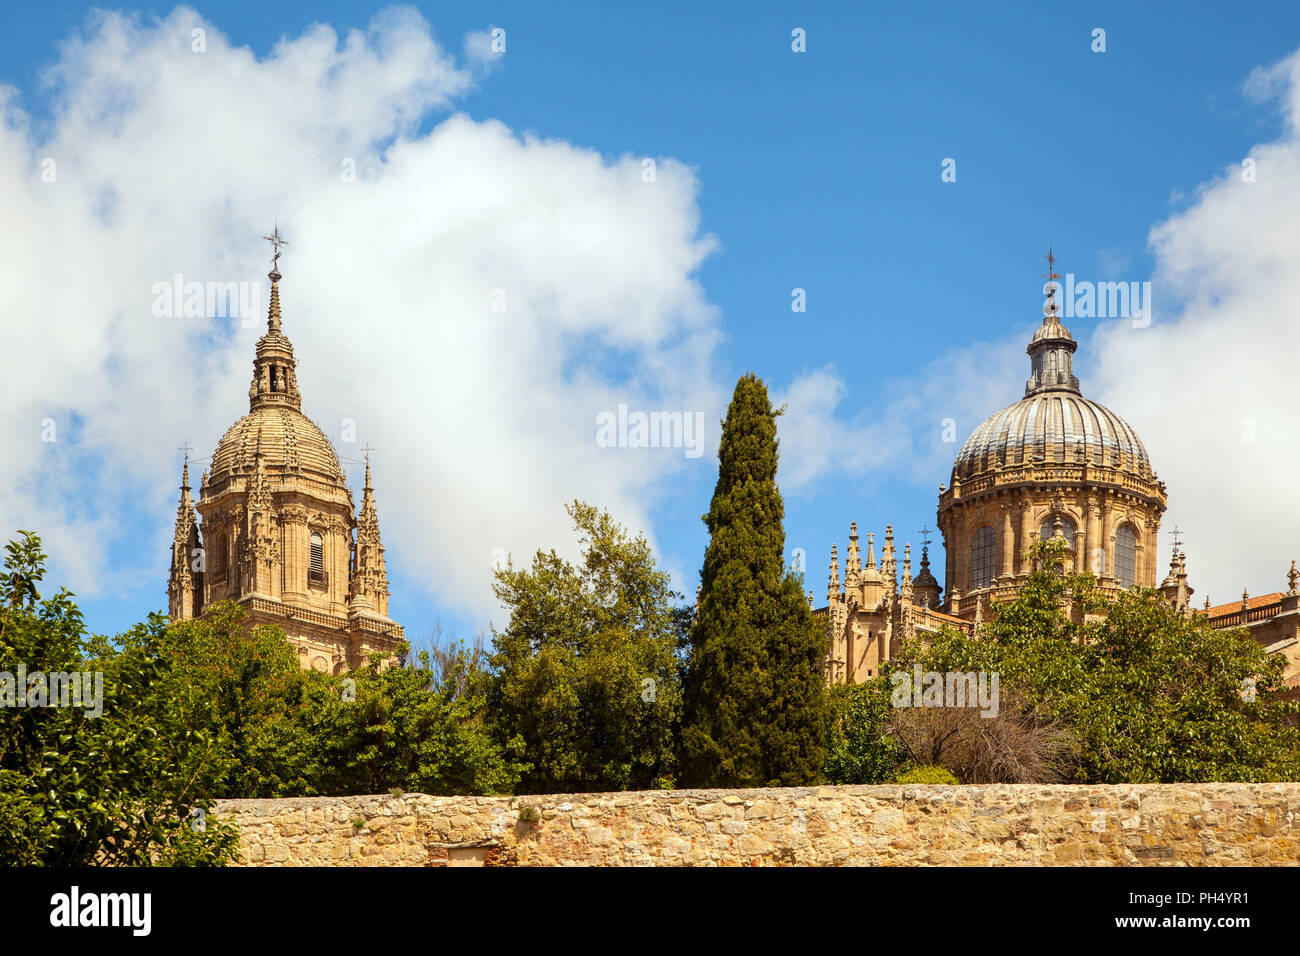 Vue de l'ancienne et la nouvelle cathédrales dans l'université espagnole ville de Salamanque Castille et Leon Espagne Banque D'Images